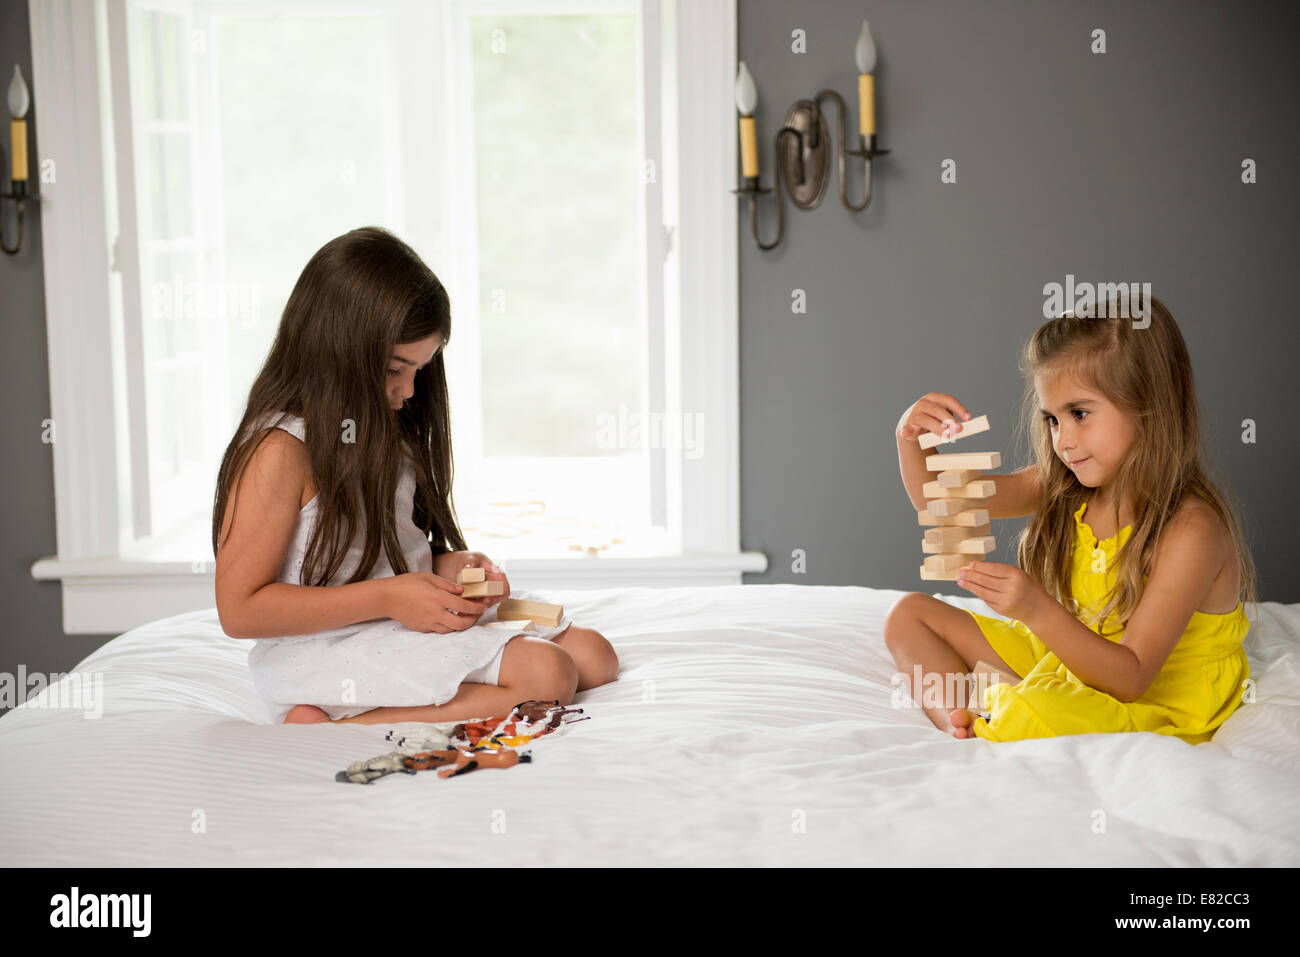 Due ragazze seduto su un letto a giocare insieme. Foto Stock